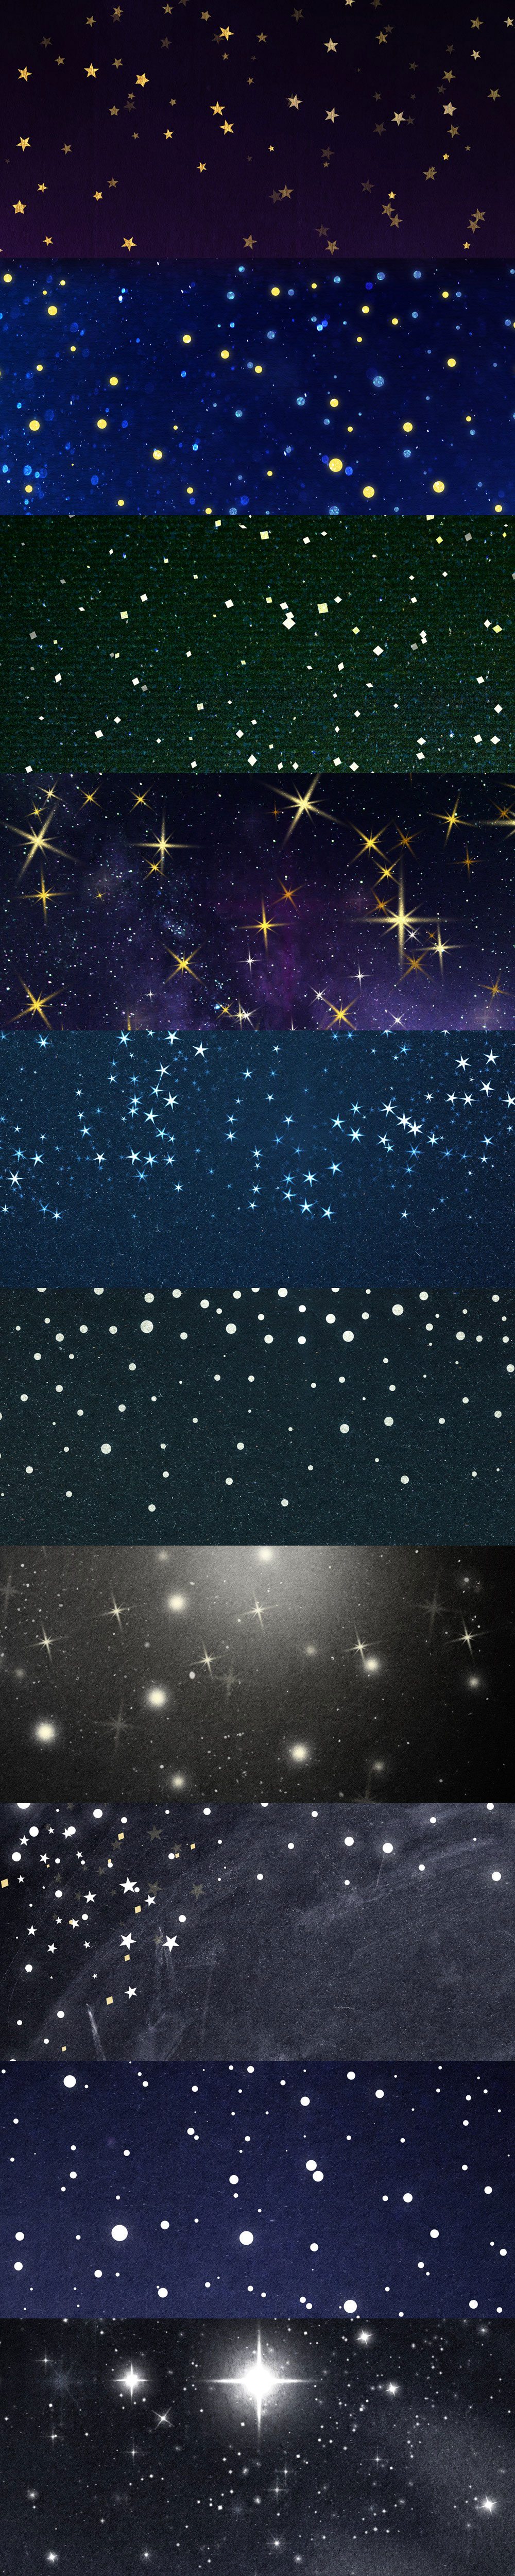 高清完美的星空背景图打包下载(3500px × 2500px)